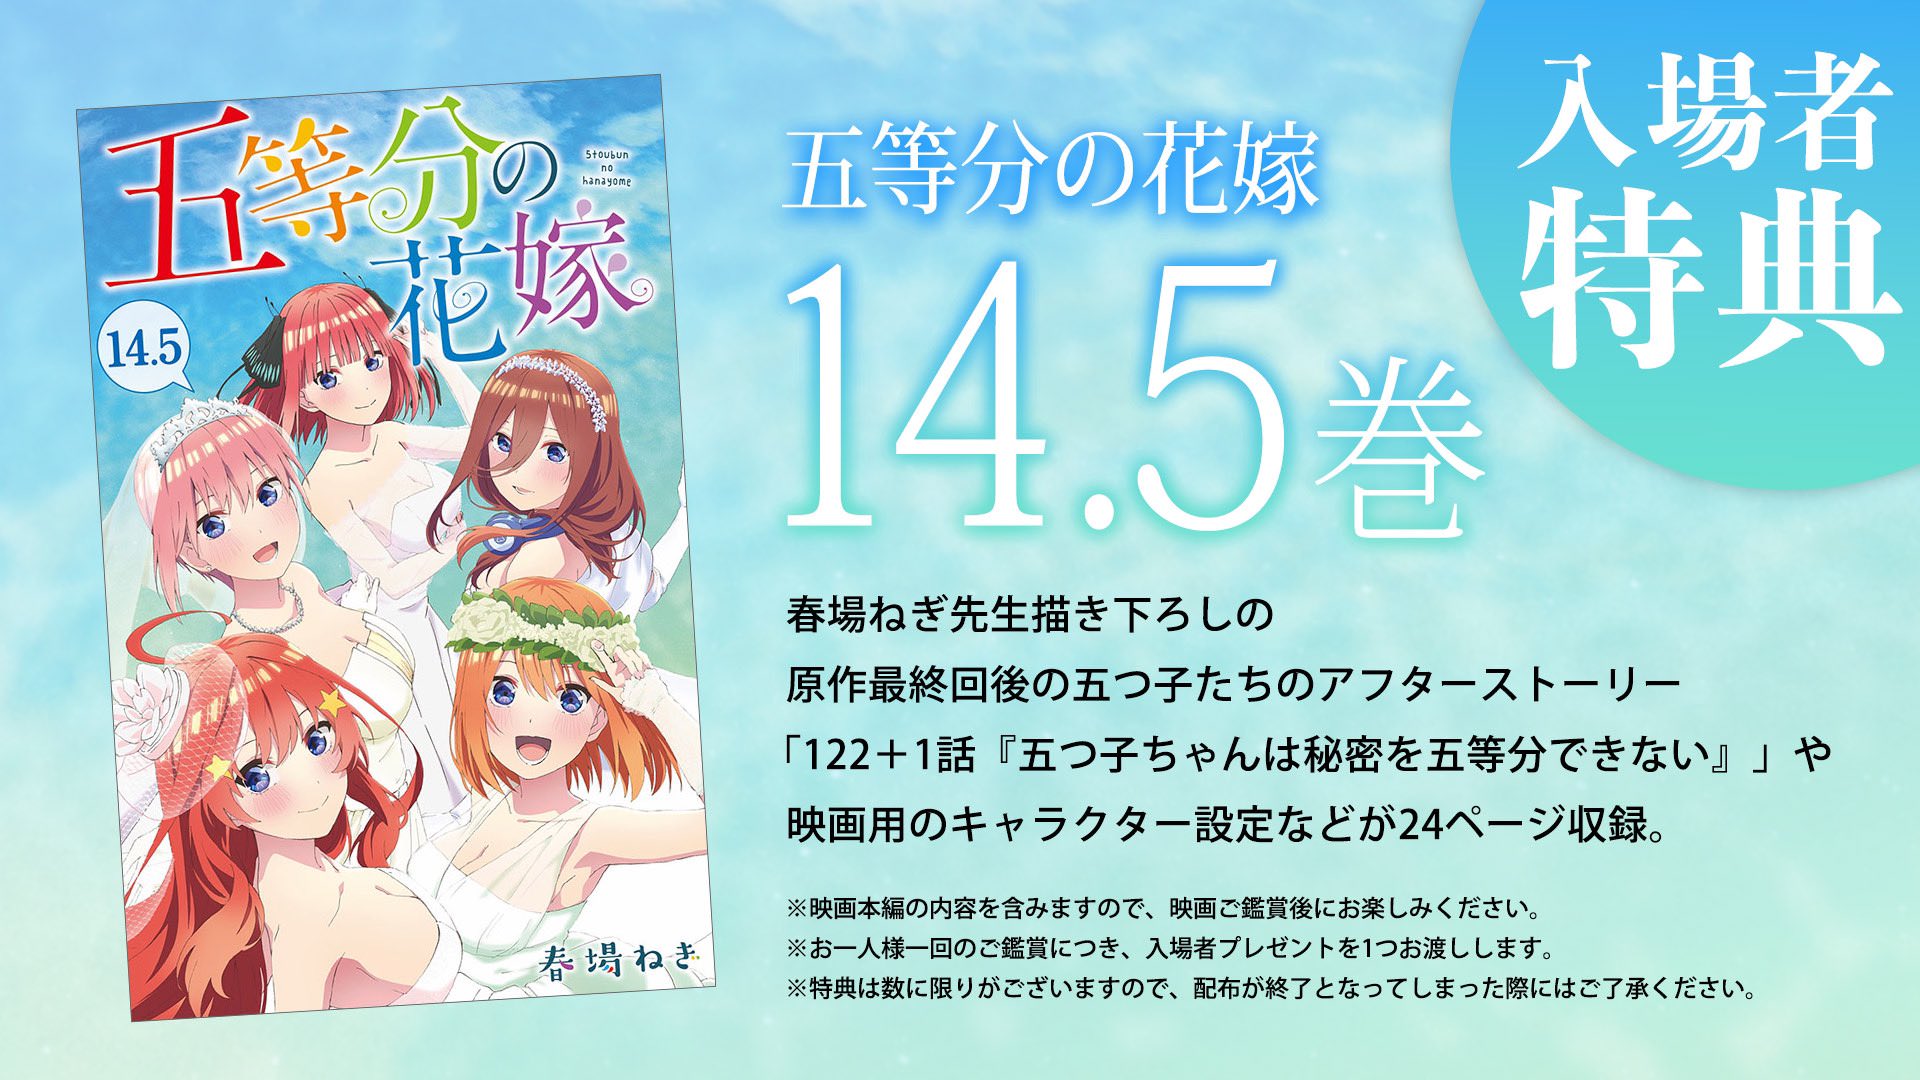 映画「五等分の花嫁」入場者特典として描き下ろし漫画『14.5巻』を配布!